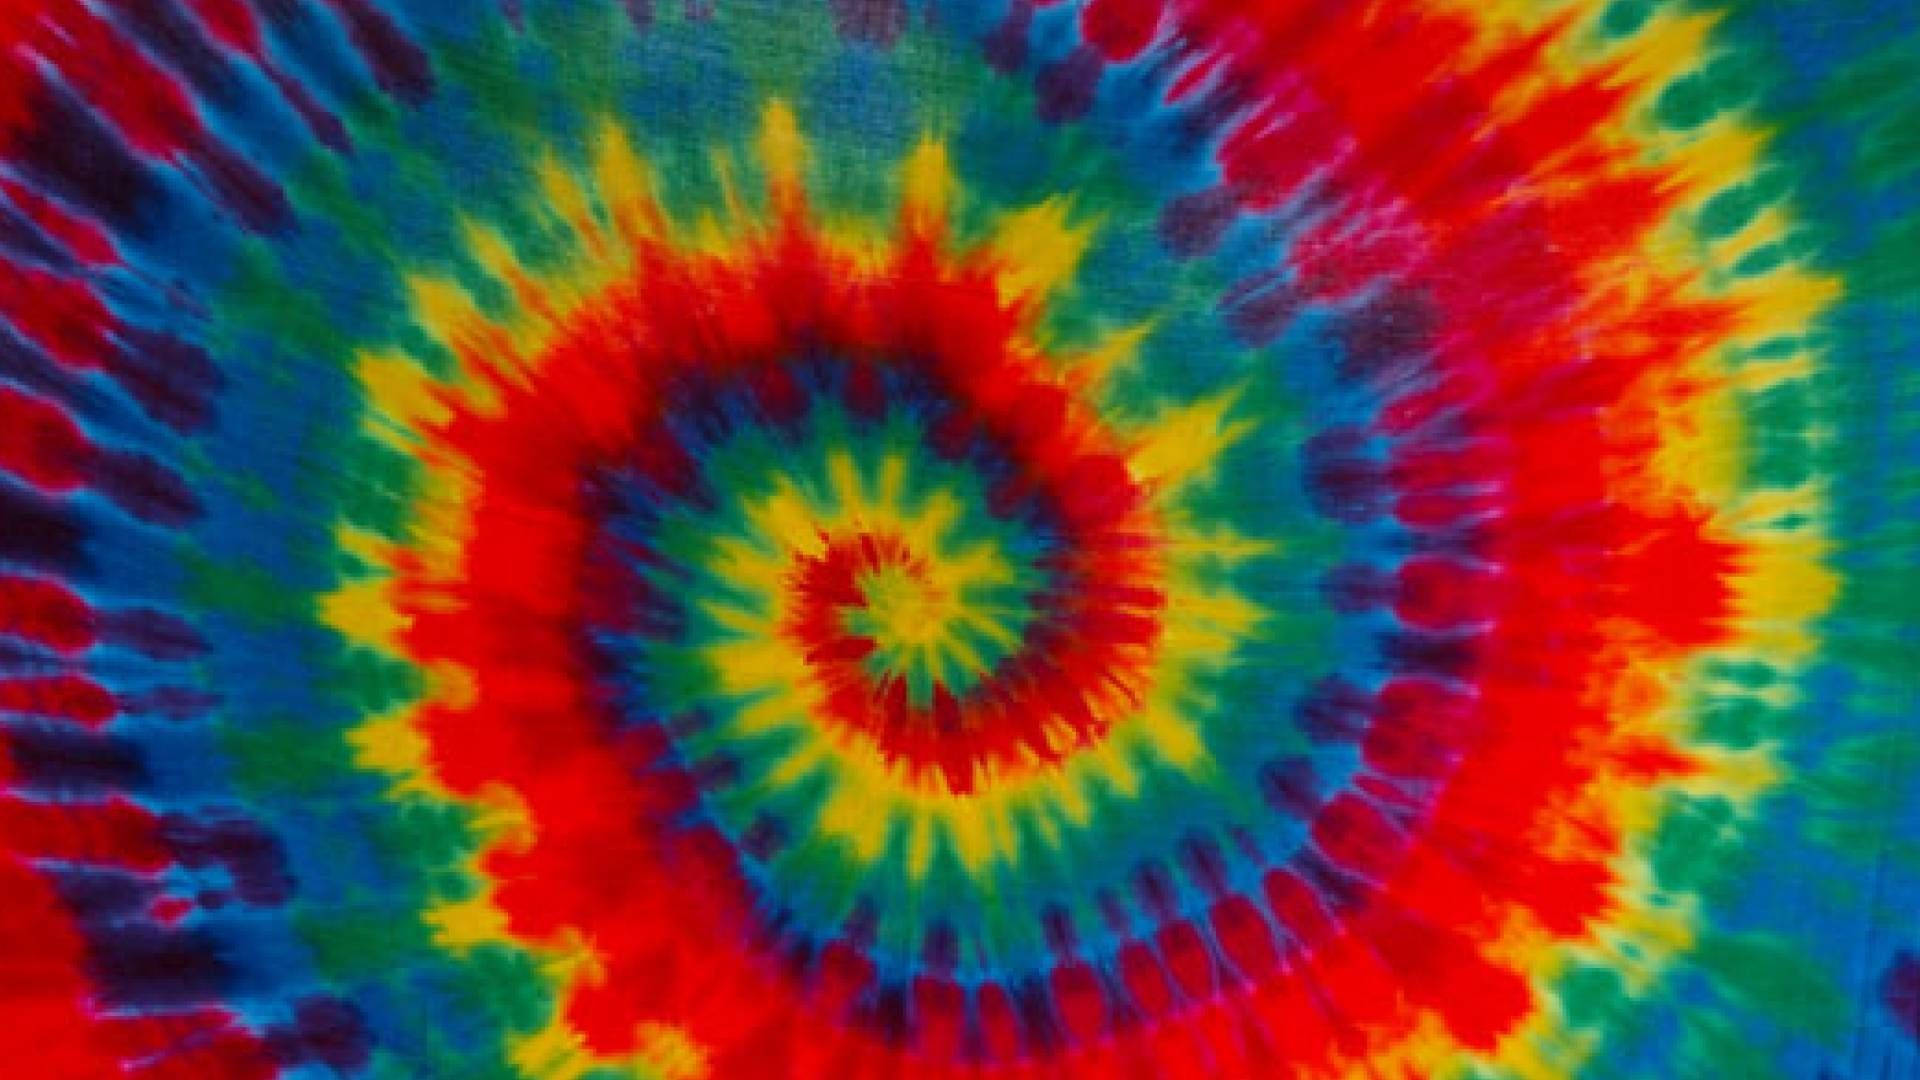 Snail Patterned Tie Dye Design Wallpaper